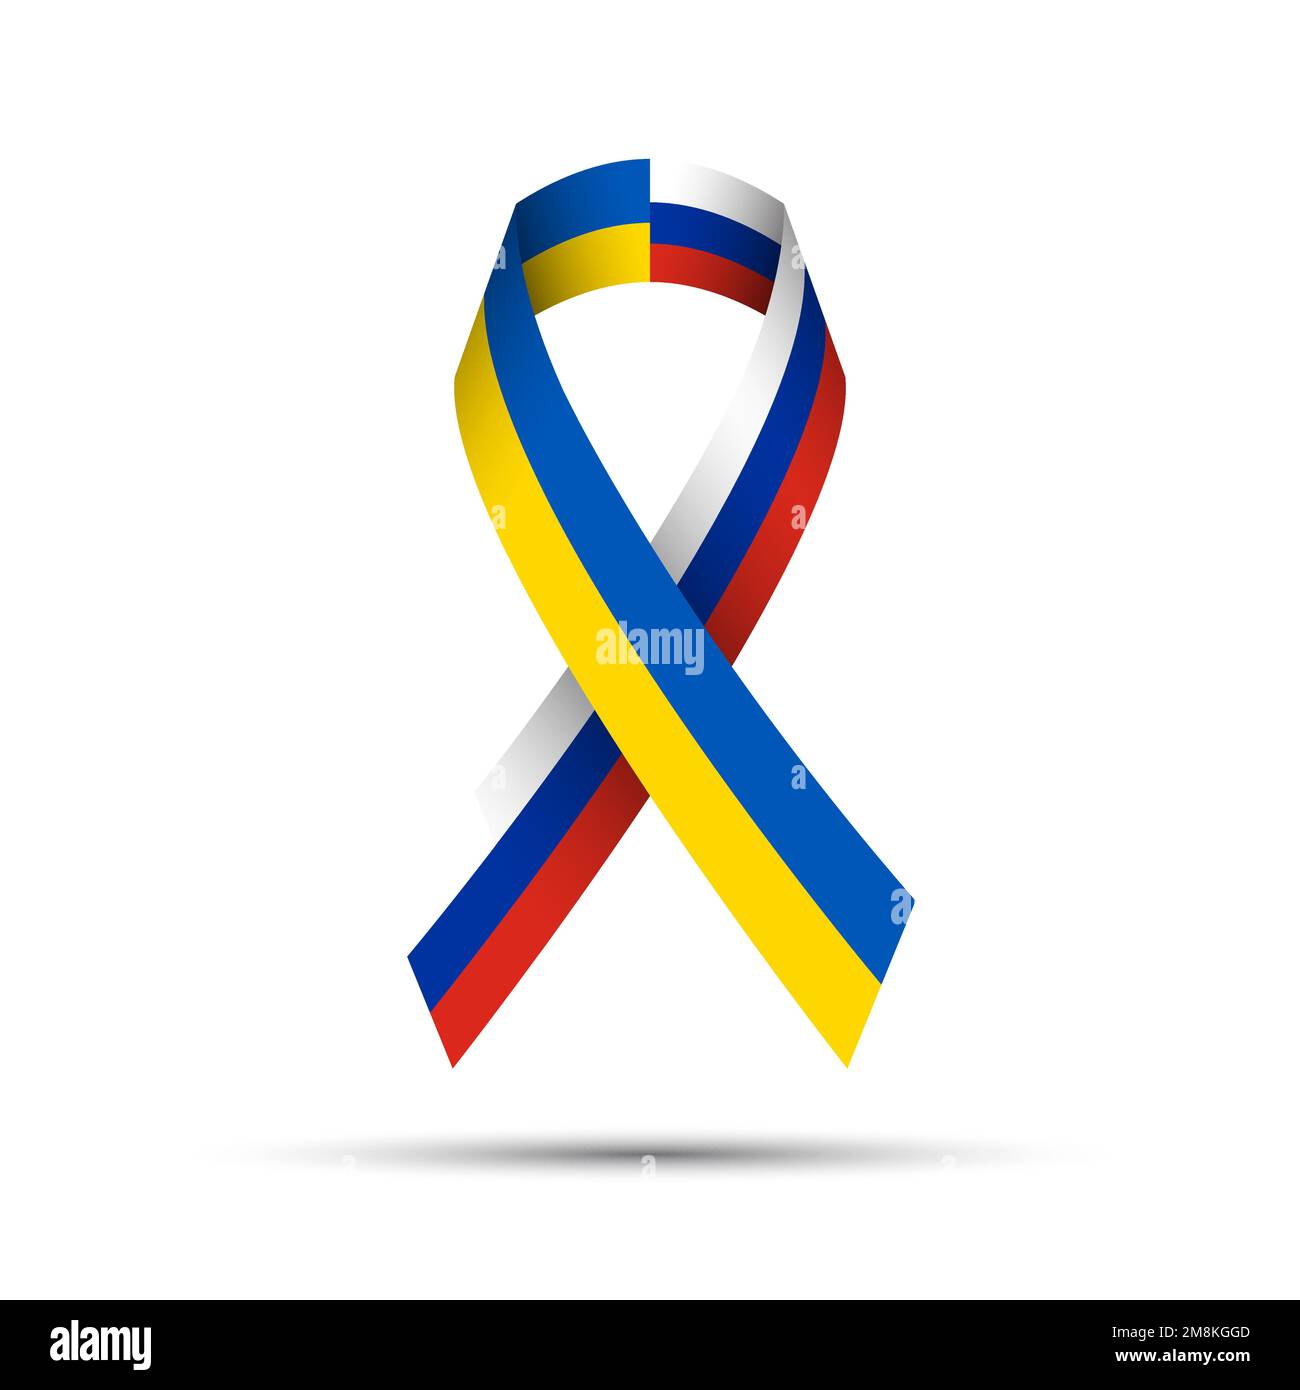 Gestreiftes Bannerband der Ukraine- und Russlandflagge auf weißem Hintergrund. Ukrainisches Symbol für Unabhängigkeit und Freiheit. Vektordarstellung Stock Vektor